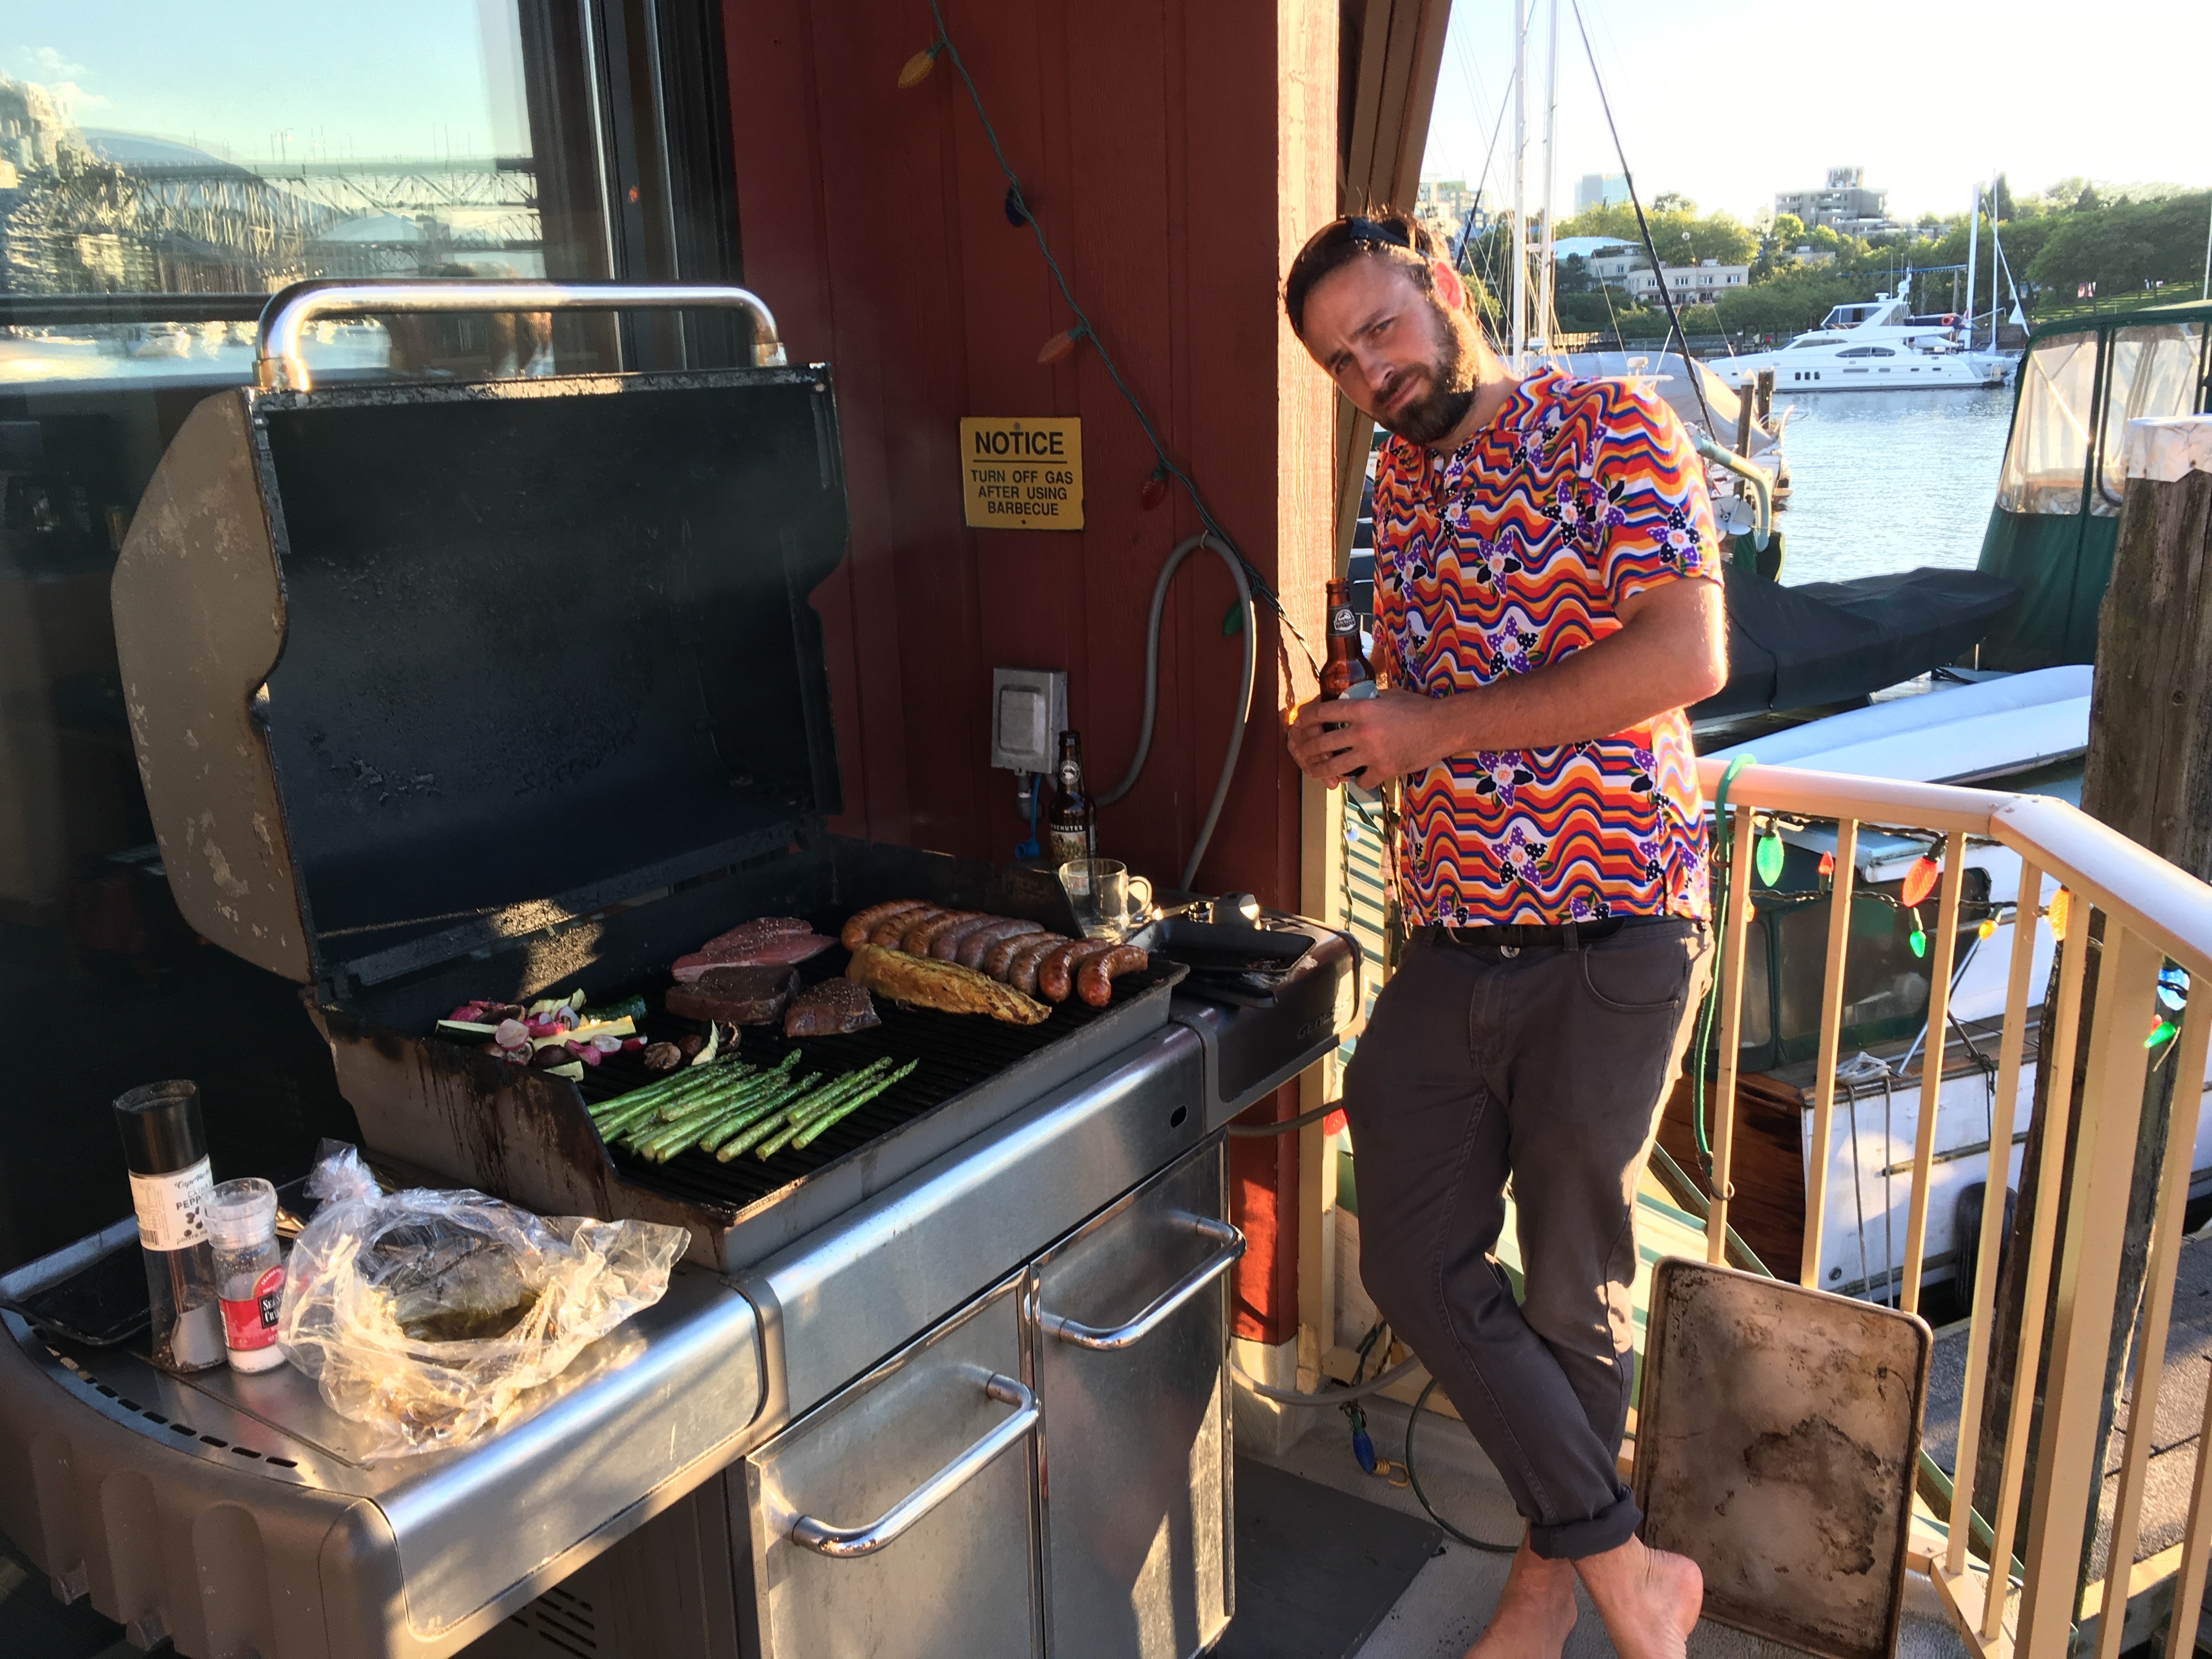 Tony Fugazi, aka Jesse E., enjoying a potluck bbq at the live aboard marina